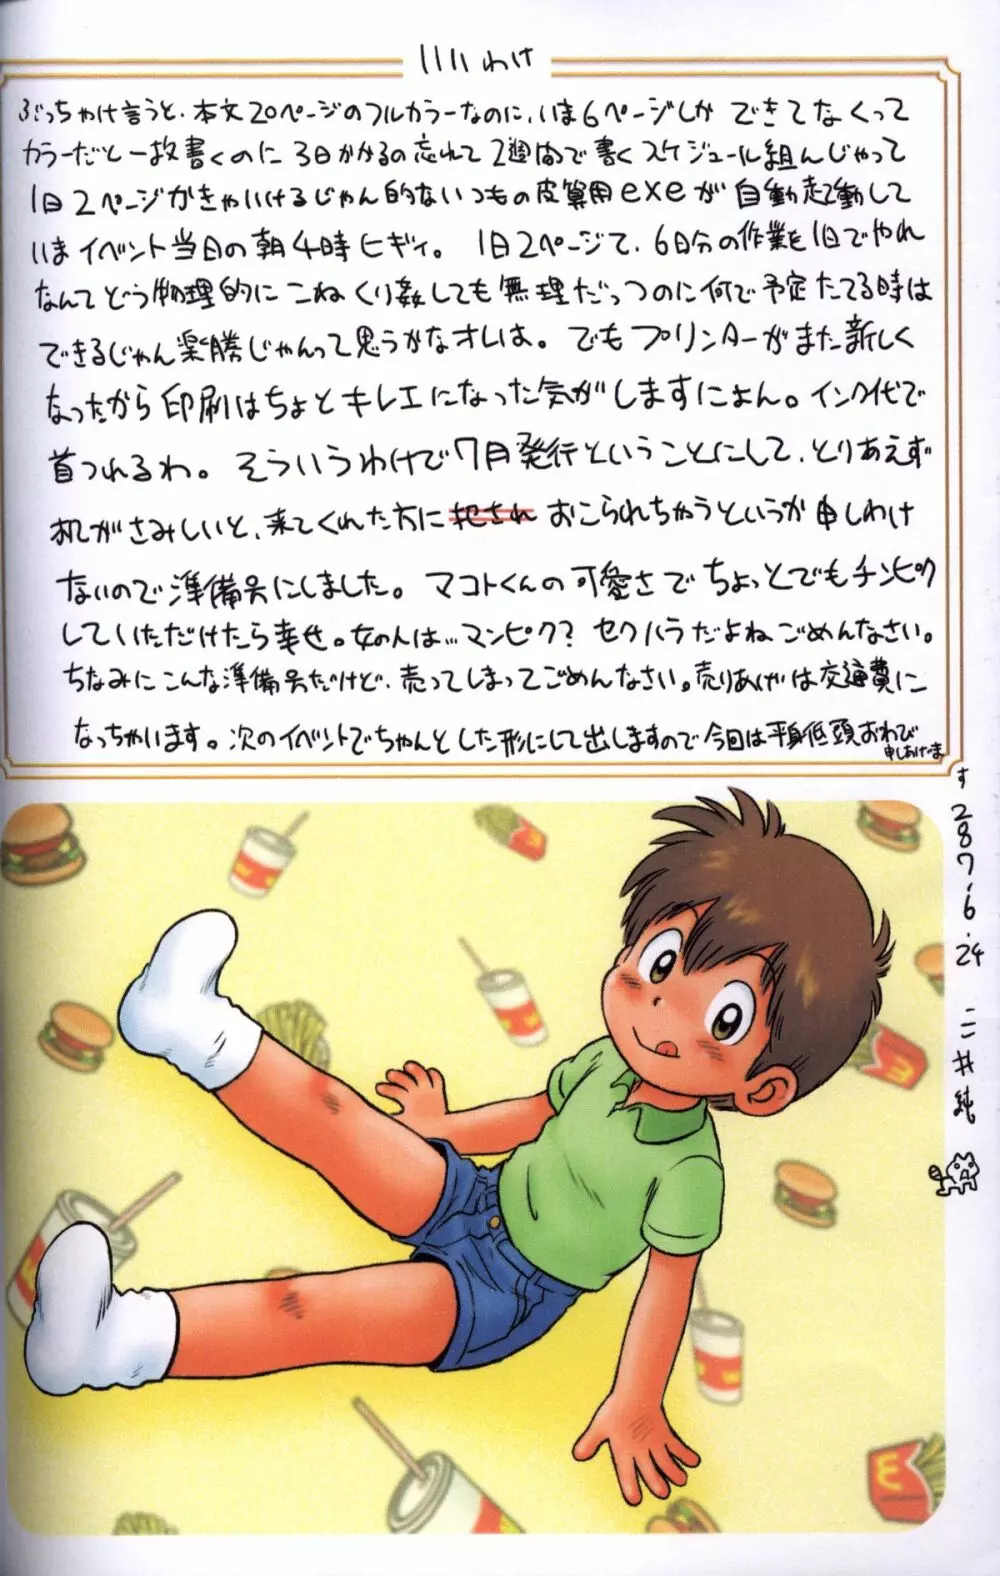 Mitsui Jun - Docking Papa - Free Sample Page.3